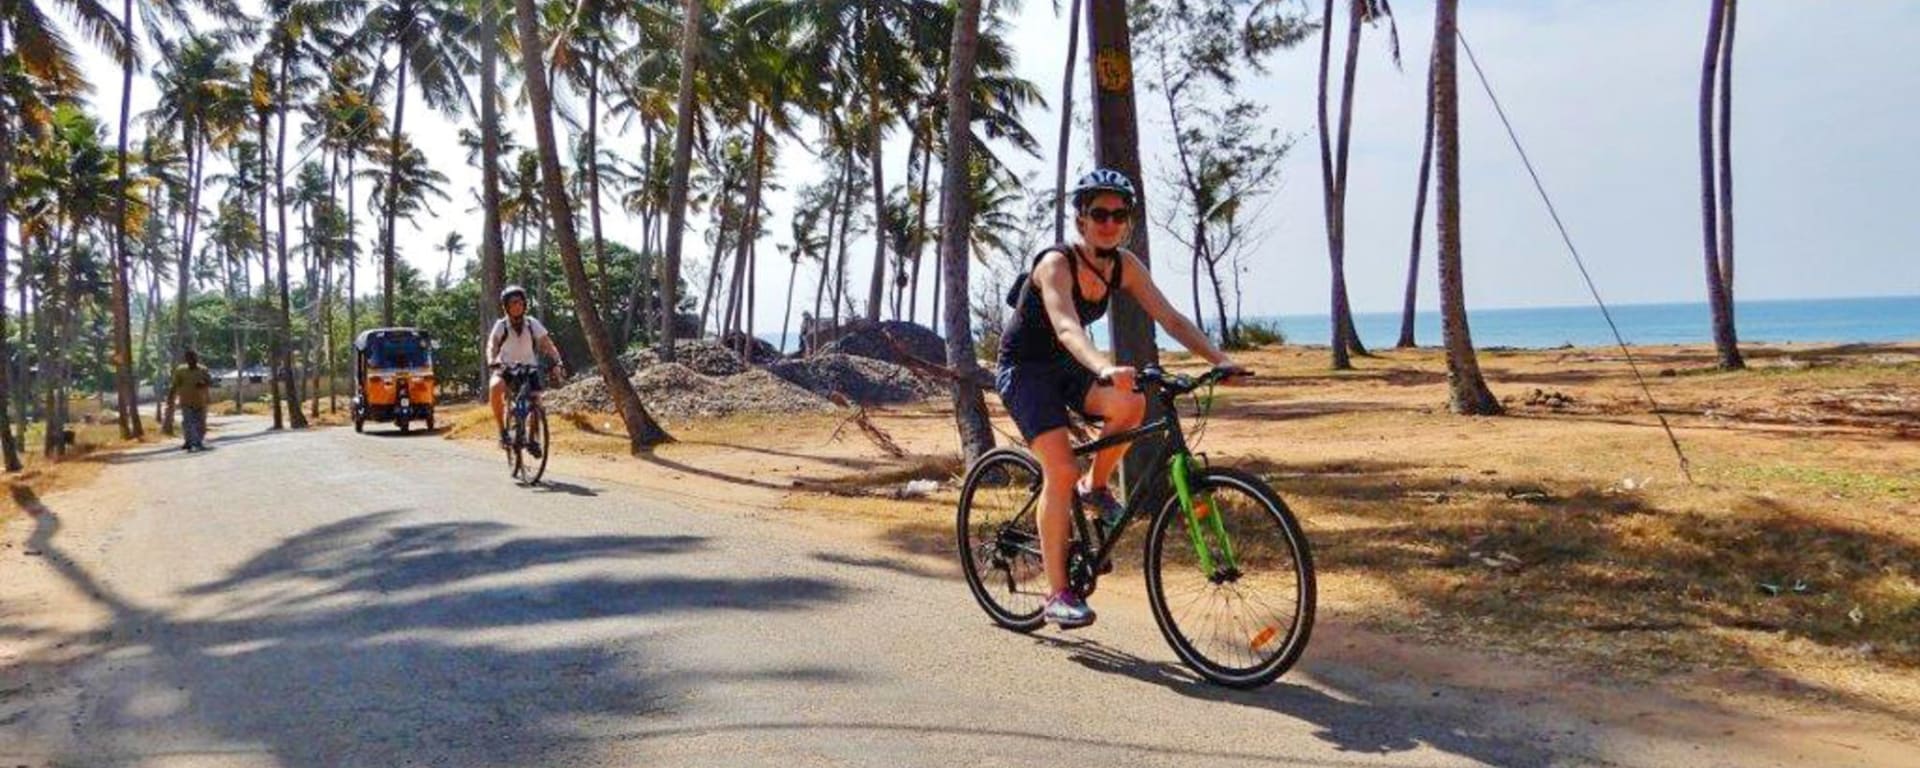 Tour à vélo à travers le Kerala de Kovalam: Kerala Biking Tour